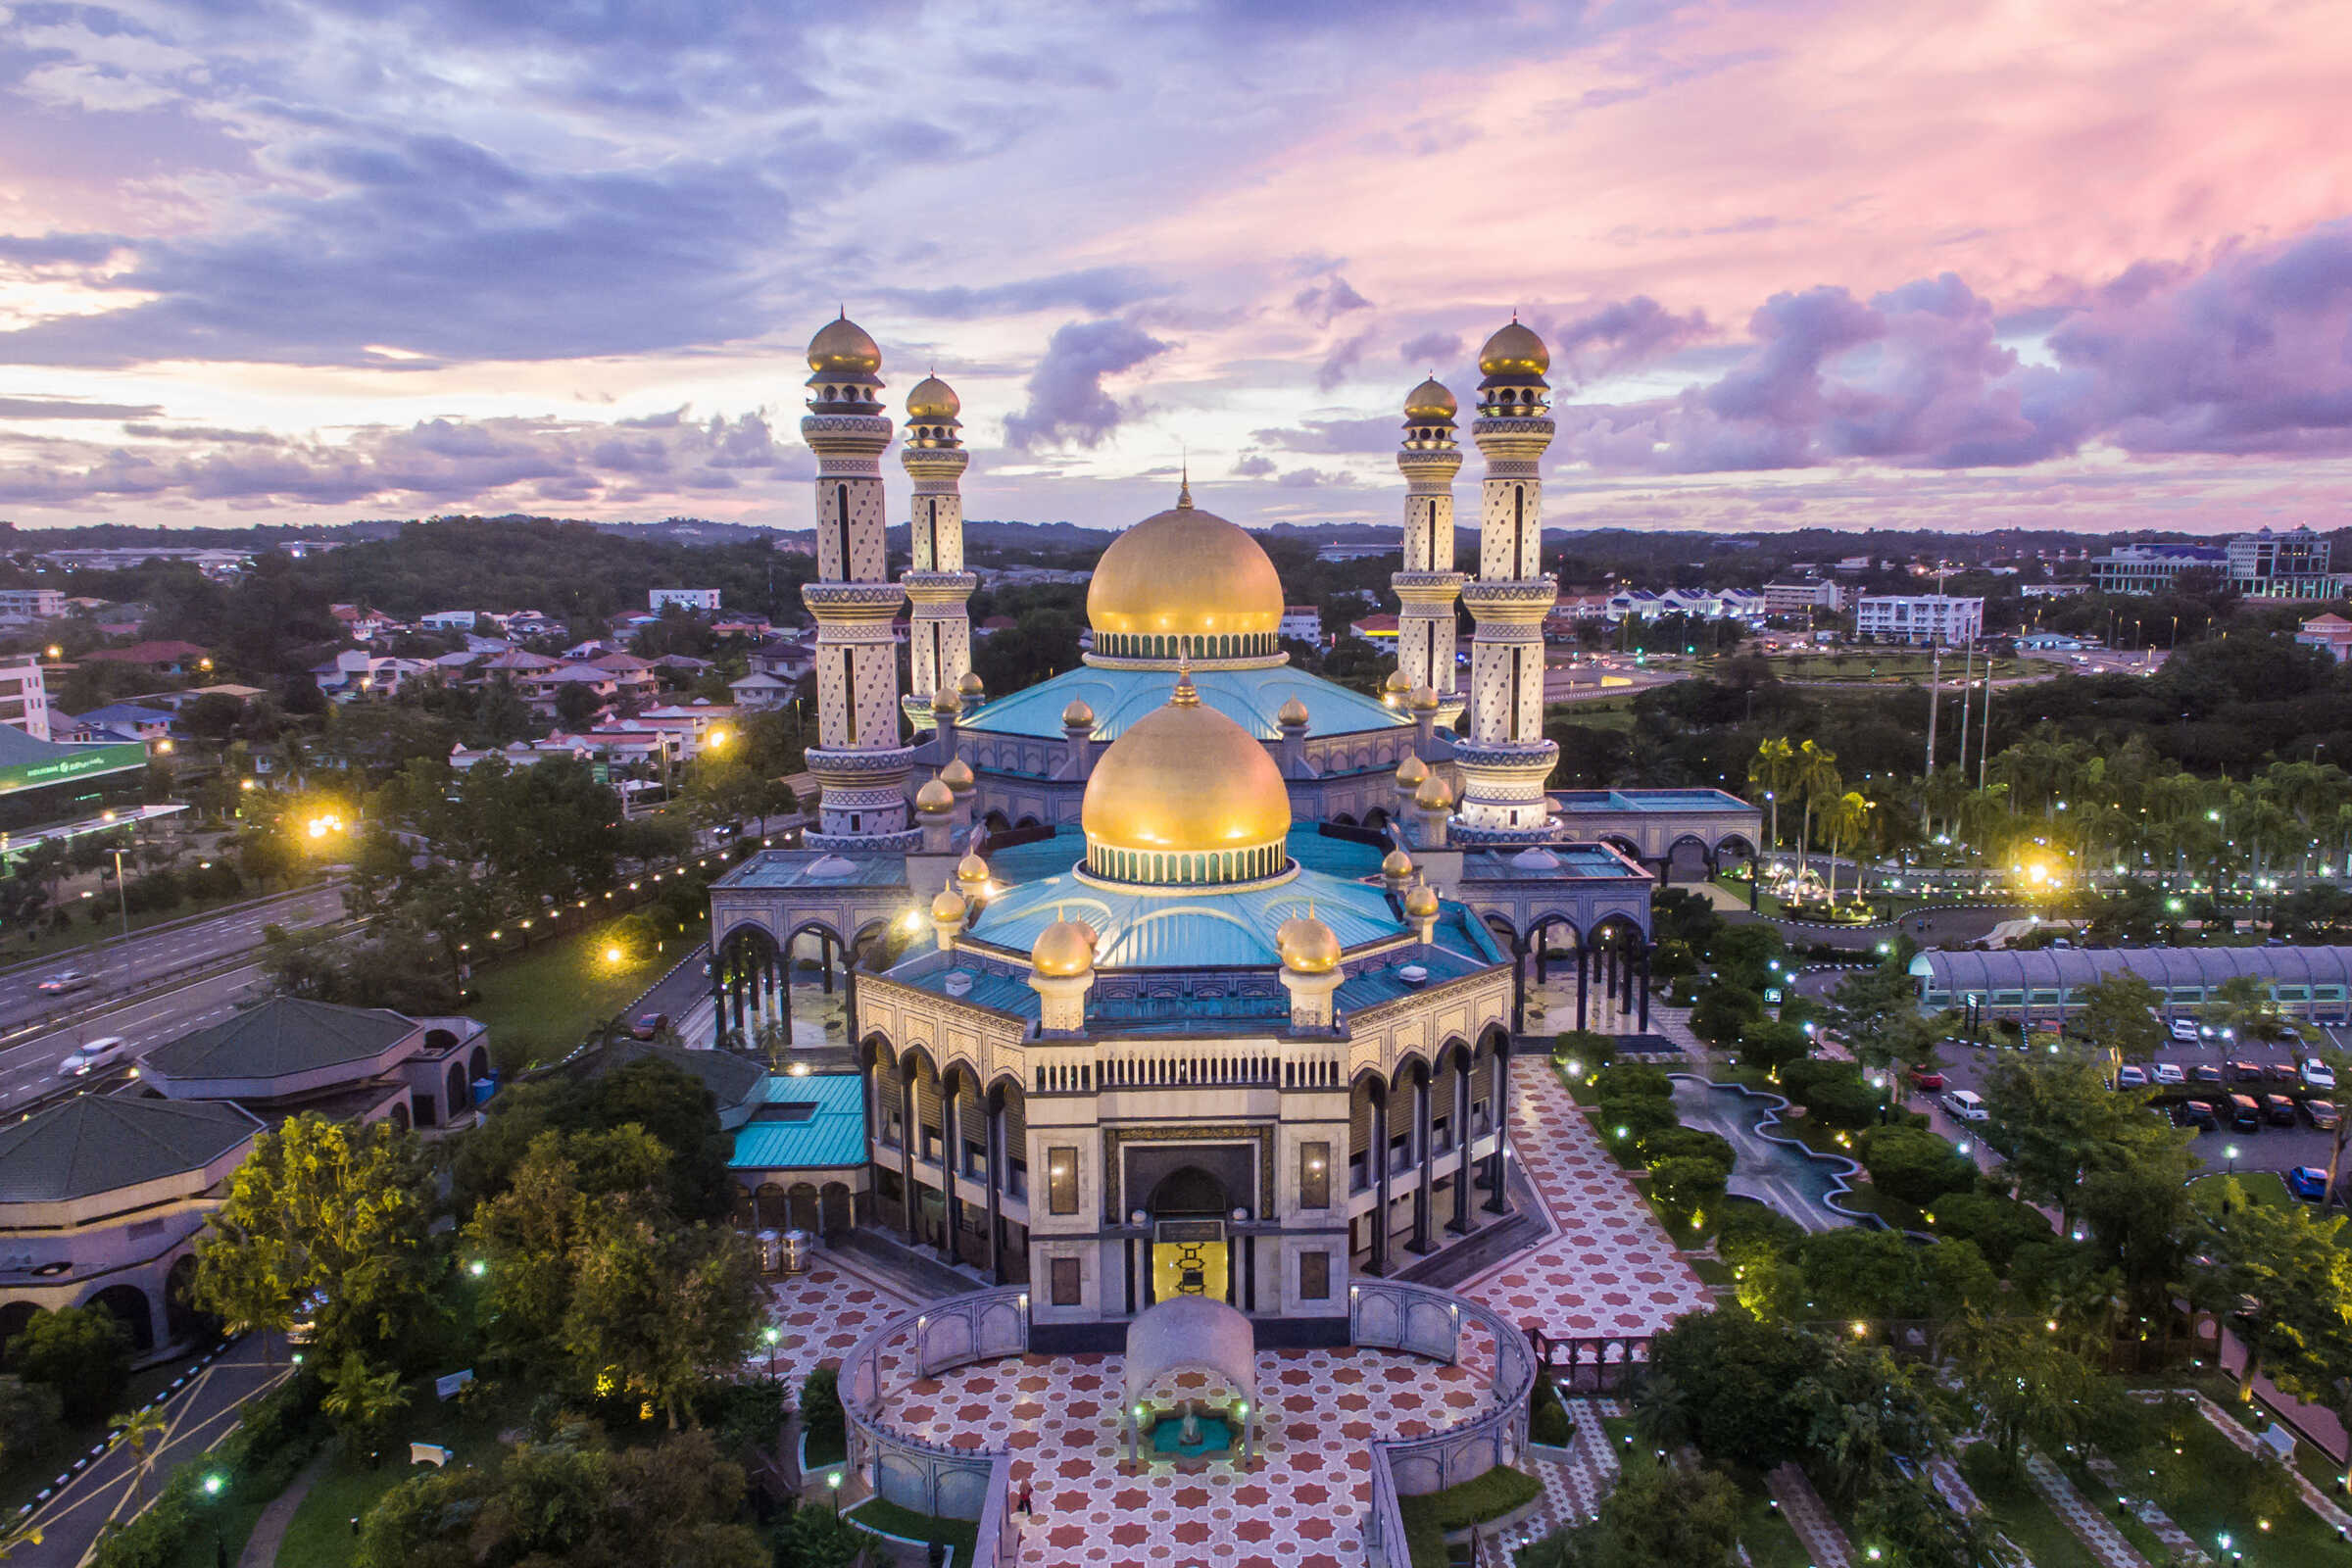 Du lịch Châu Á - Liên tuyến Brunei - Nhật Bản mùa Đông từ Sài Gòn giá tốt